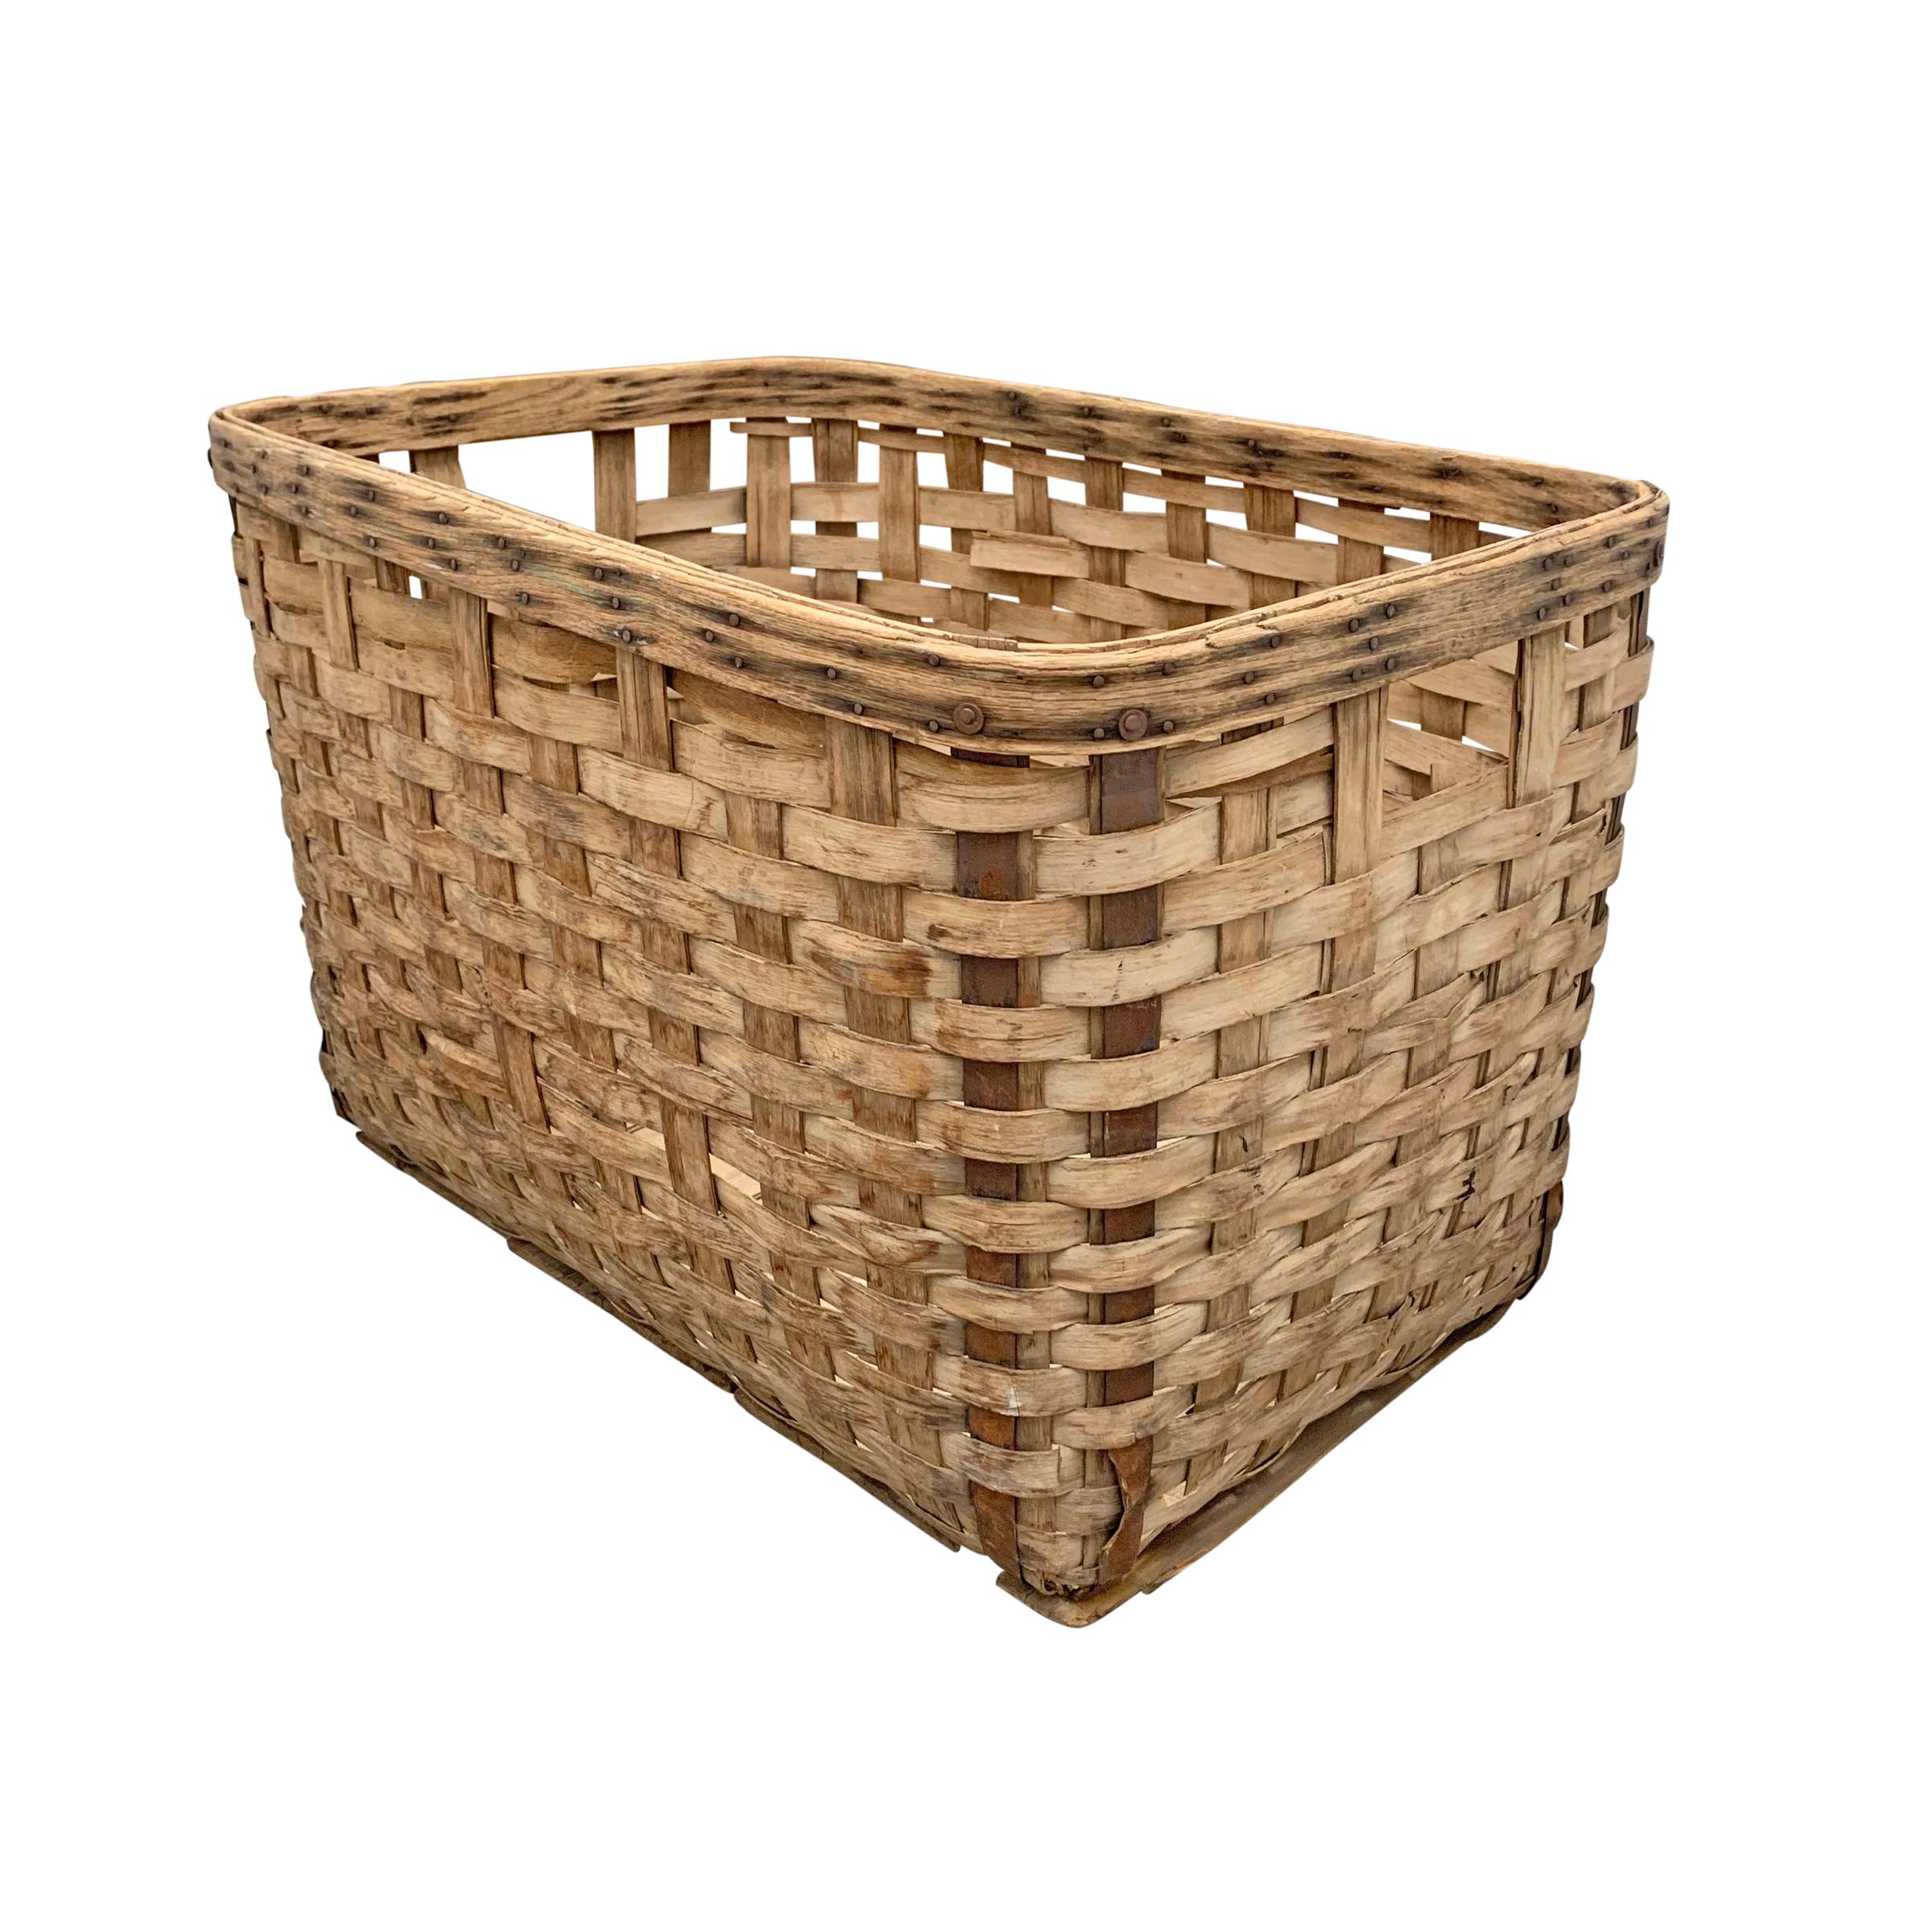 Hand-Woven 19th Century American Oak Splint Basket